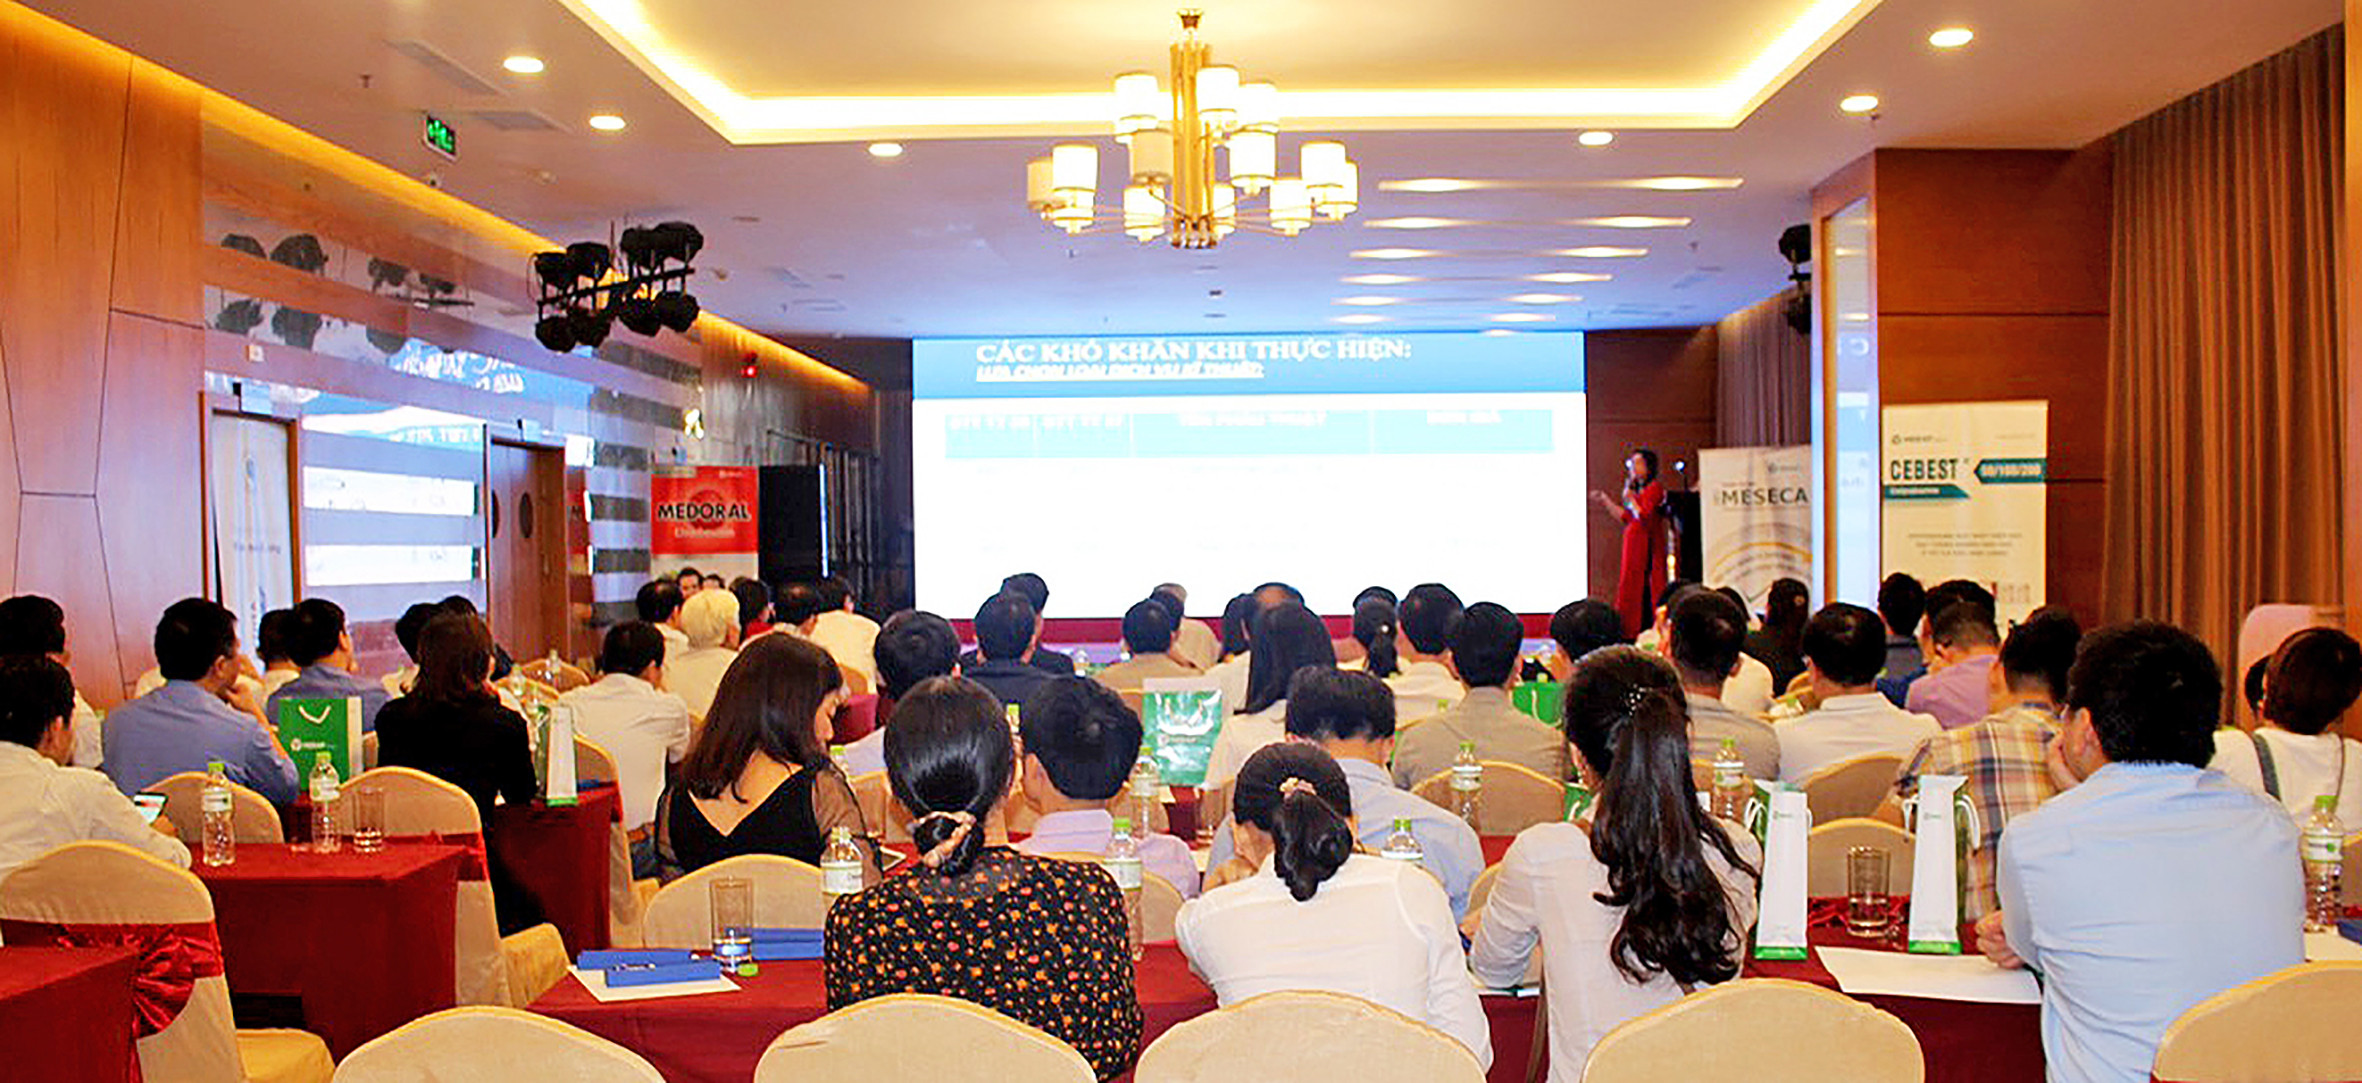 Hội thảo chuyên đề cập nhật điều trị các bệnh lý tai mũi họng được tổ chức tại Nghệ An. Ảnh: Nguyệt Minh